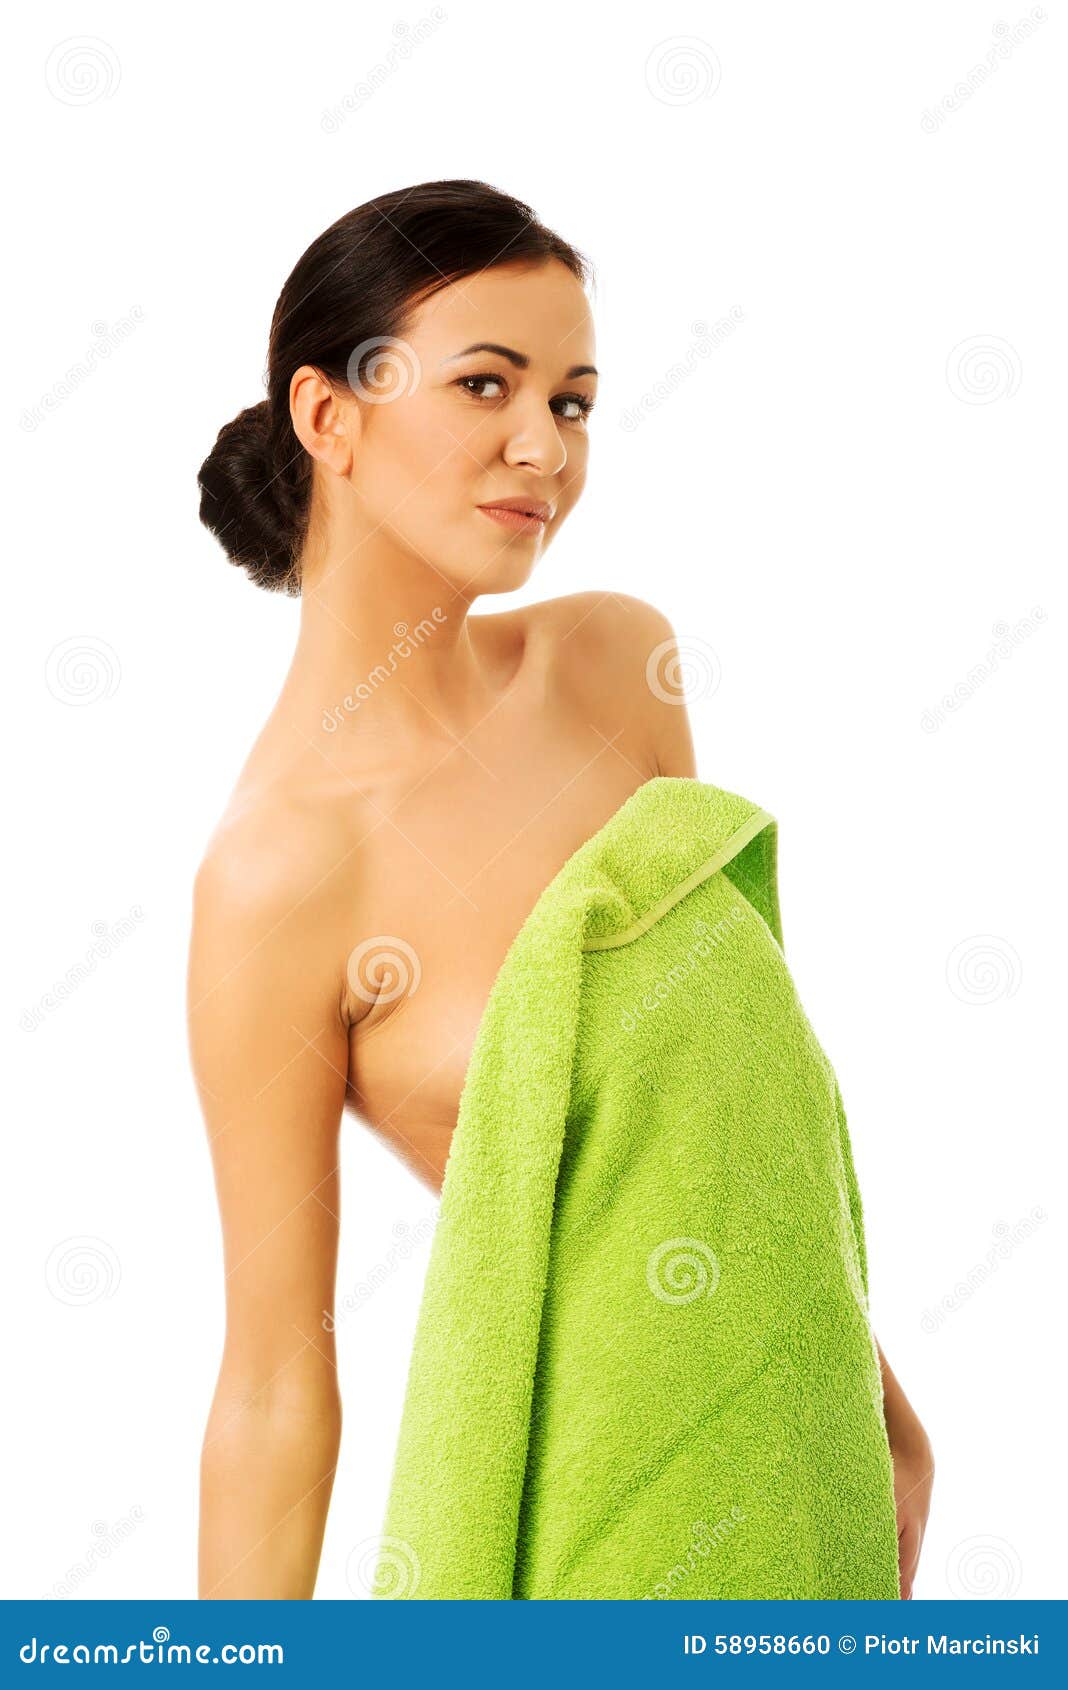 В полотенце 18. Девушка обернутая в полотенце. Девушка в одном полотенце. Женщины завёрнутые в полотенце. Девушка завернутая в полотенце.